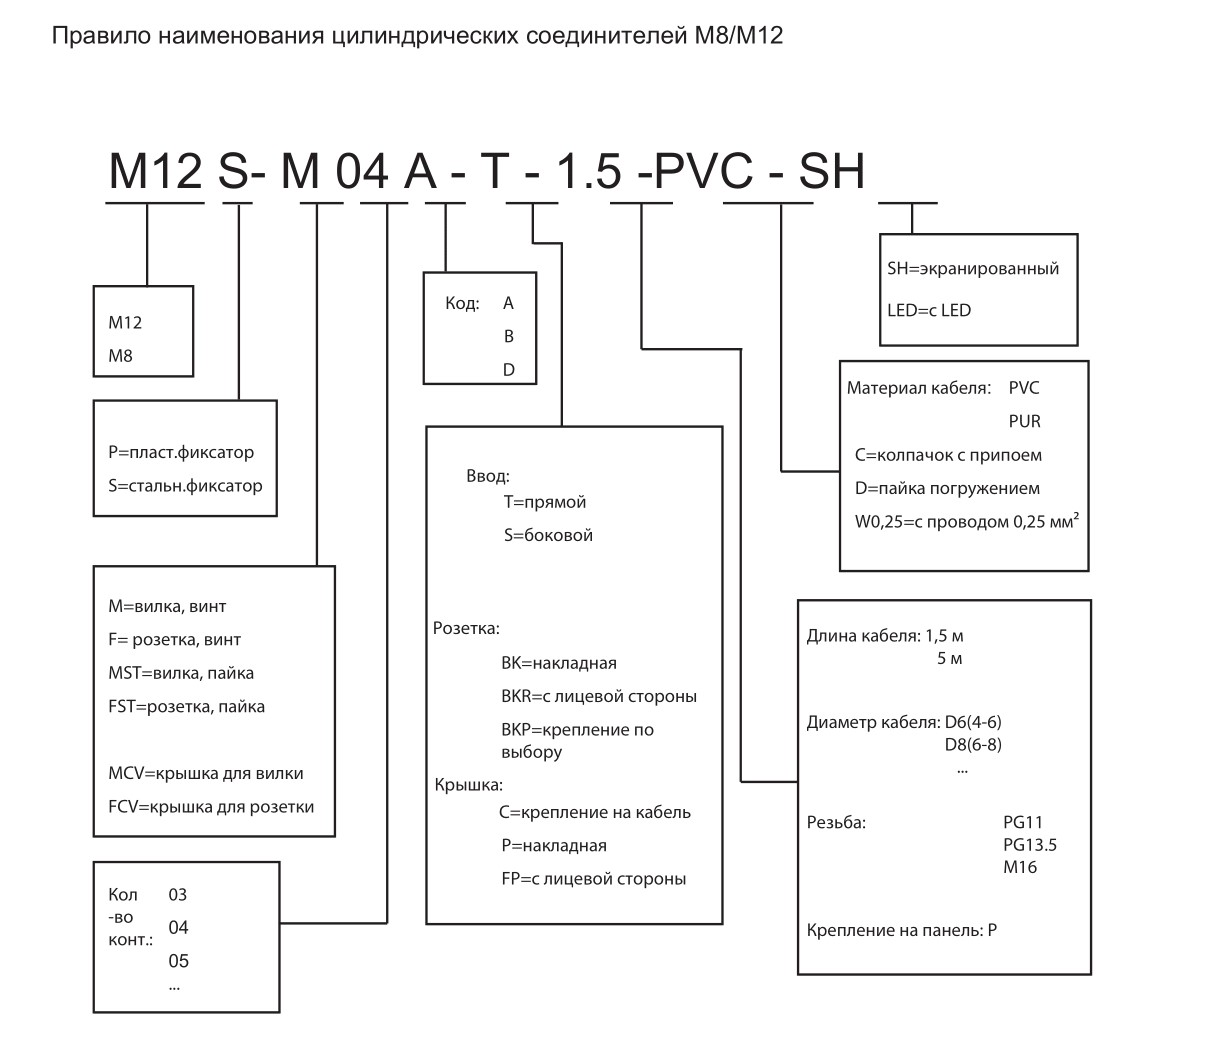 Цилиндрический соединитель-розетка M12P-F08A-T-2D5 1630084243001: Структура обозначения